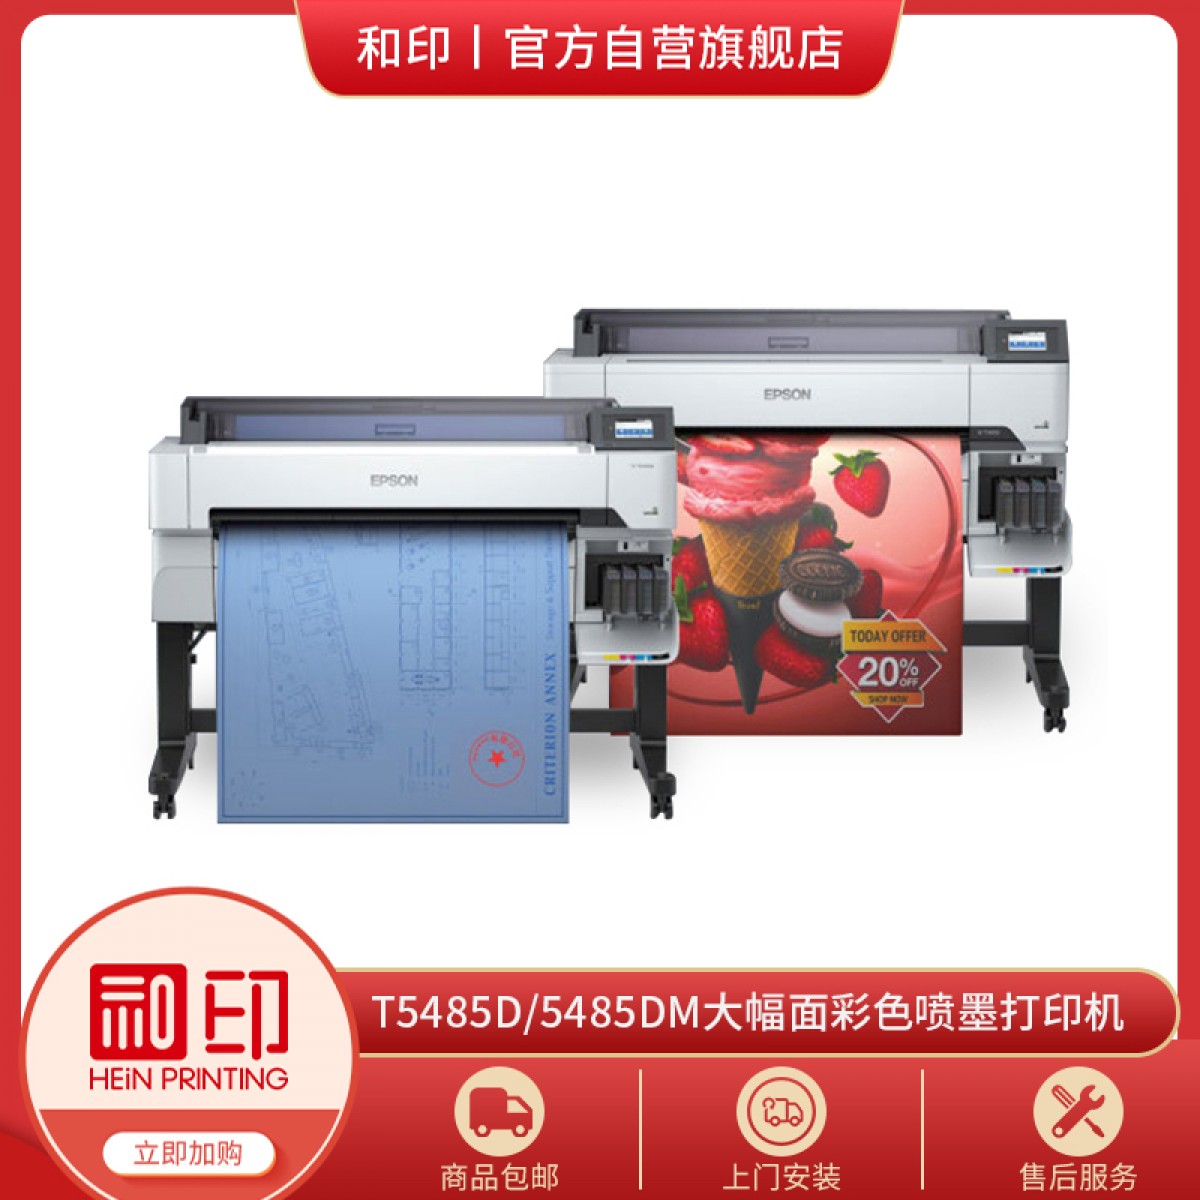 大幅面彩色喷墨打印机-EPSON-T5485D/5485DM